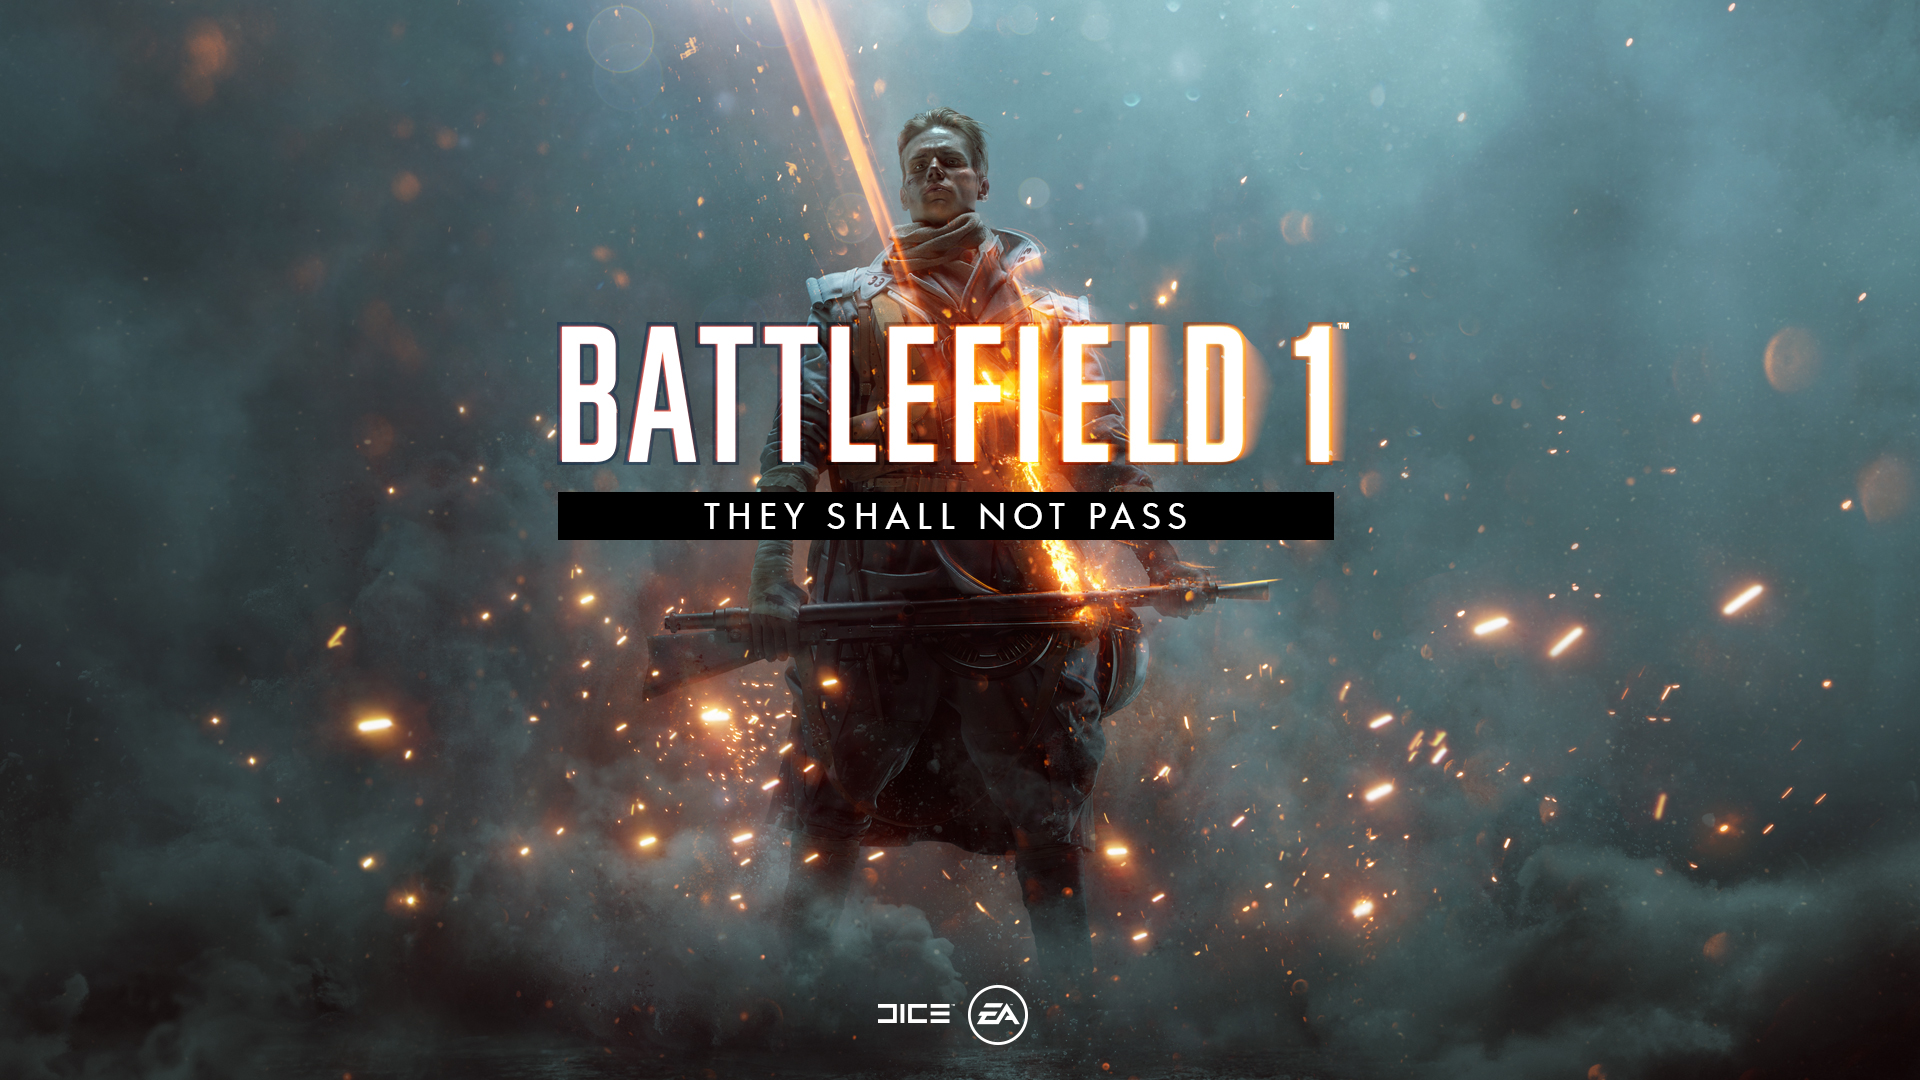 Descubre las novedades de They Shall Not Pass, la primera expansión de Battlefield 1